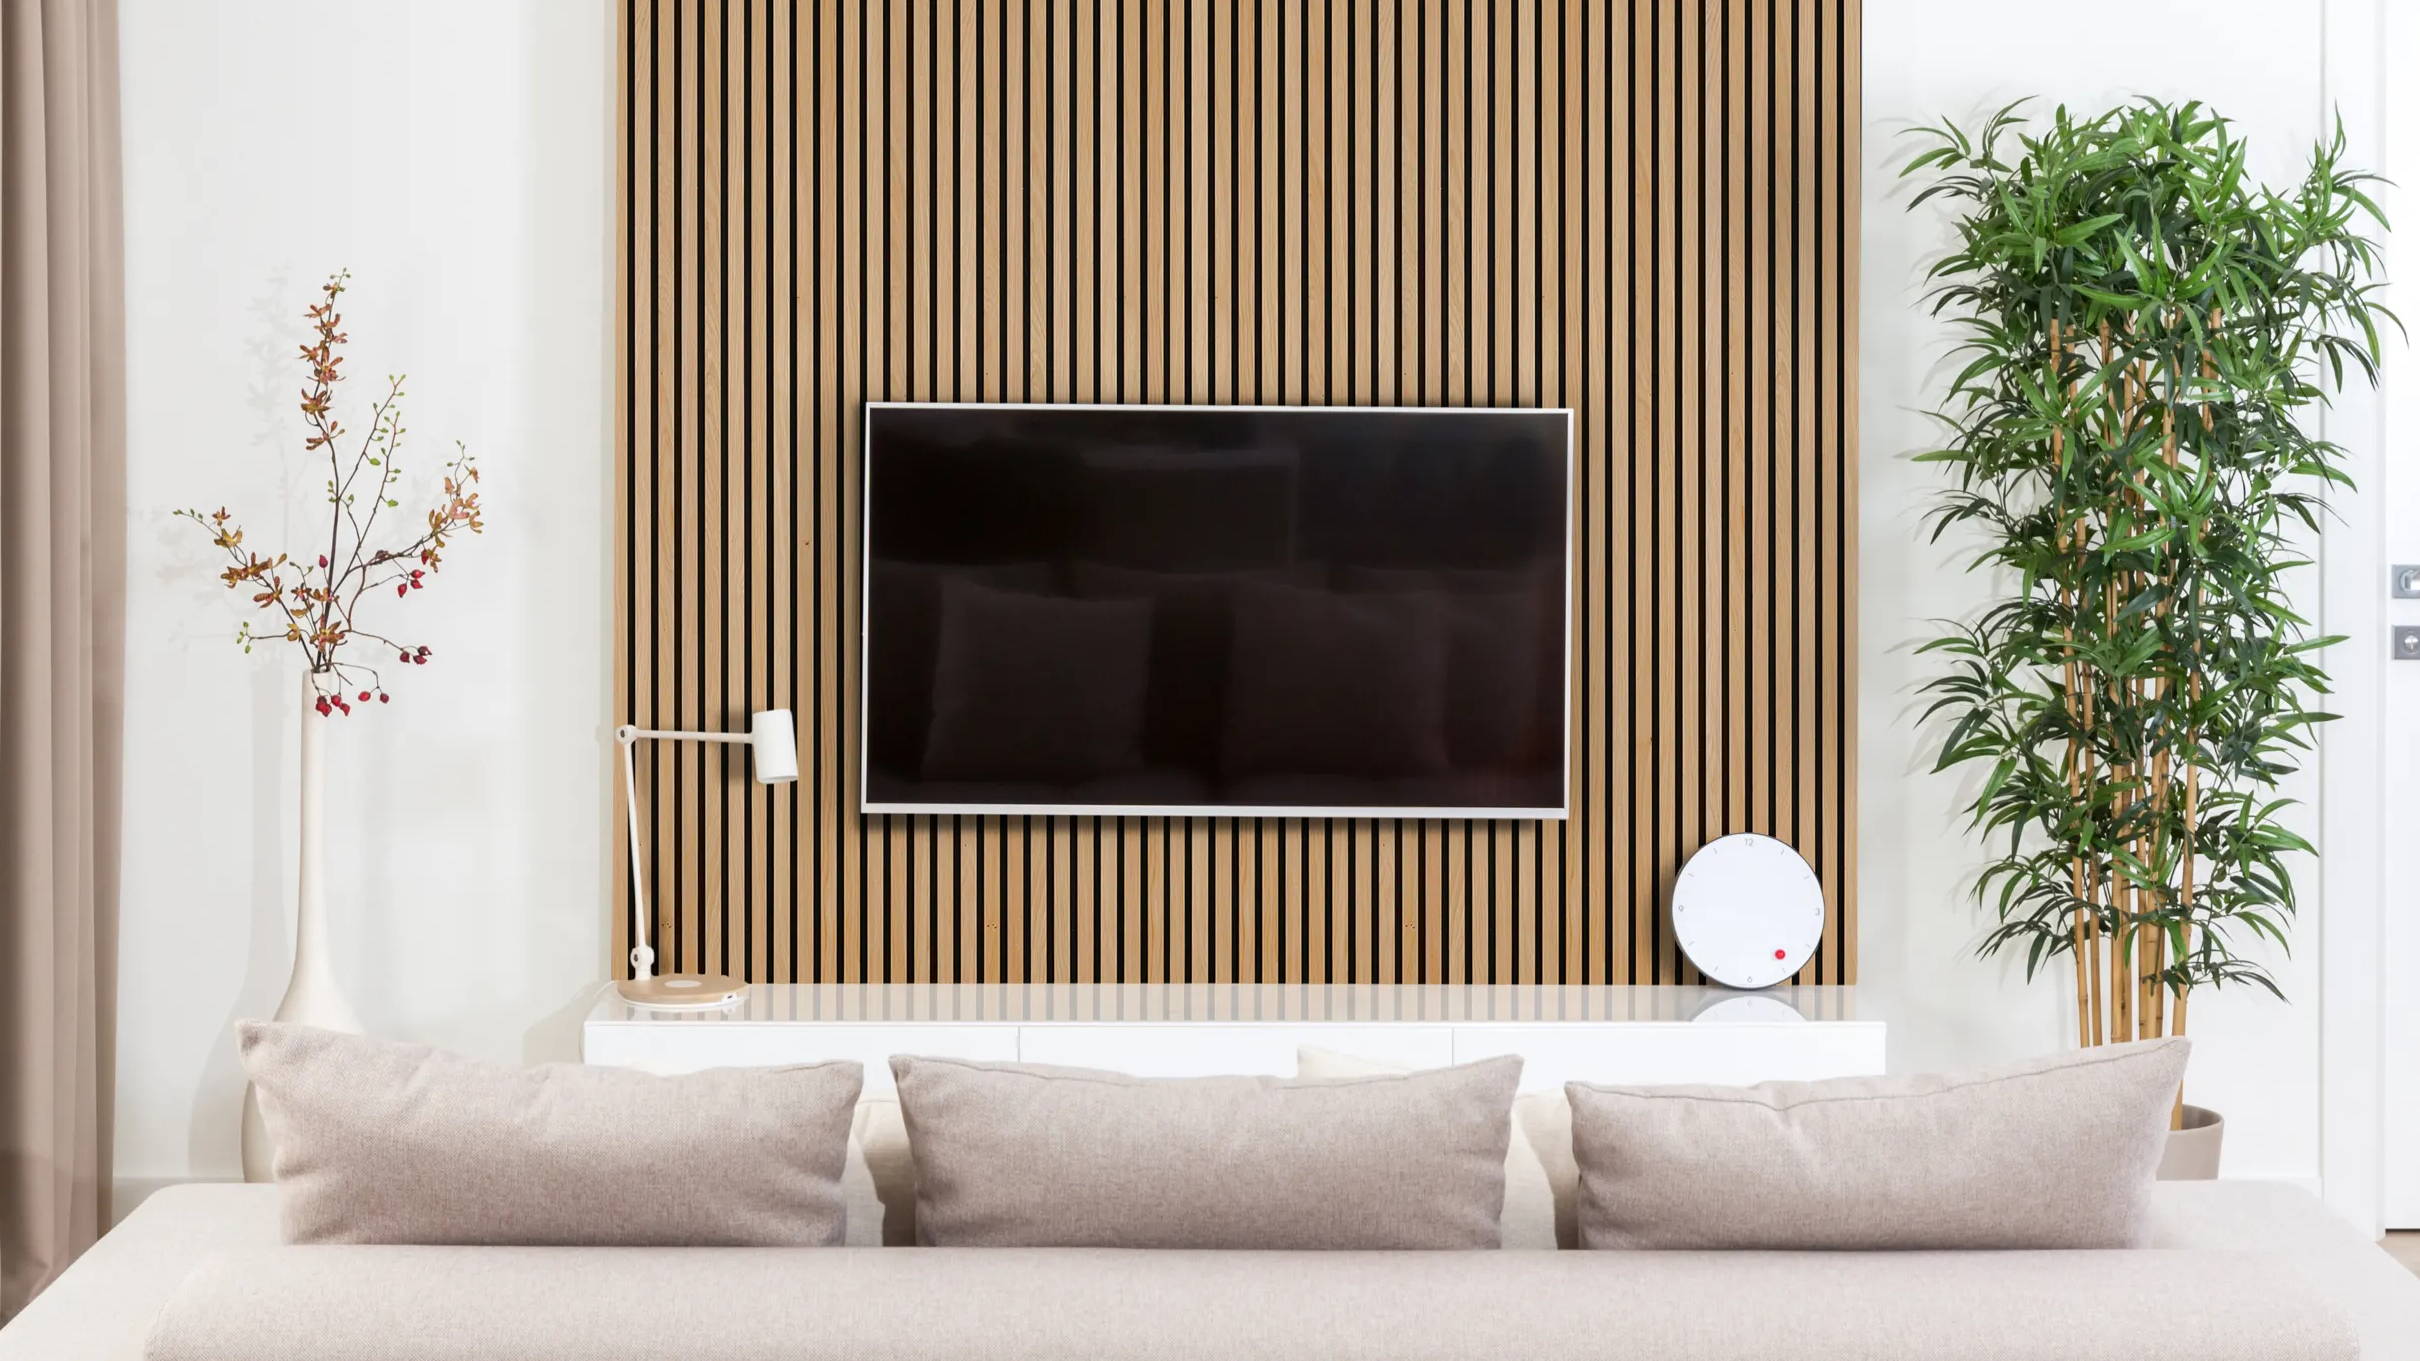 Natural oak acoustic slat wood veneer wall paneling installed in modern lounge.